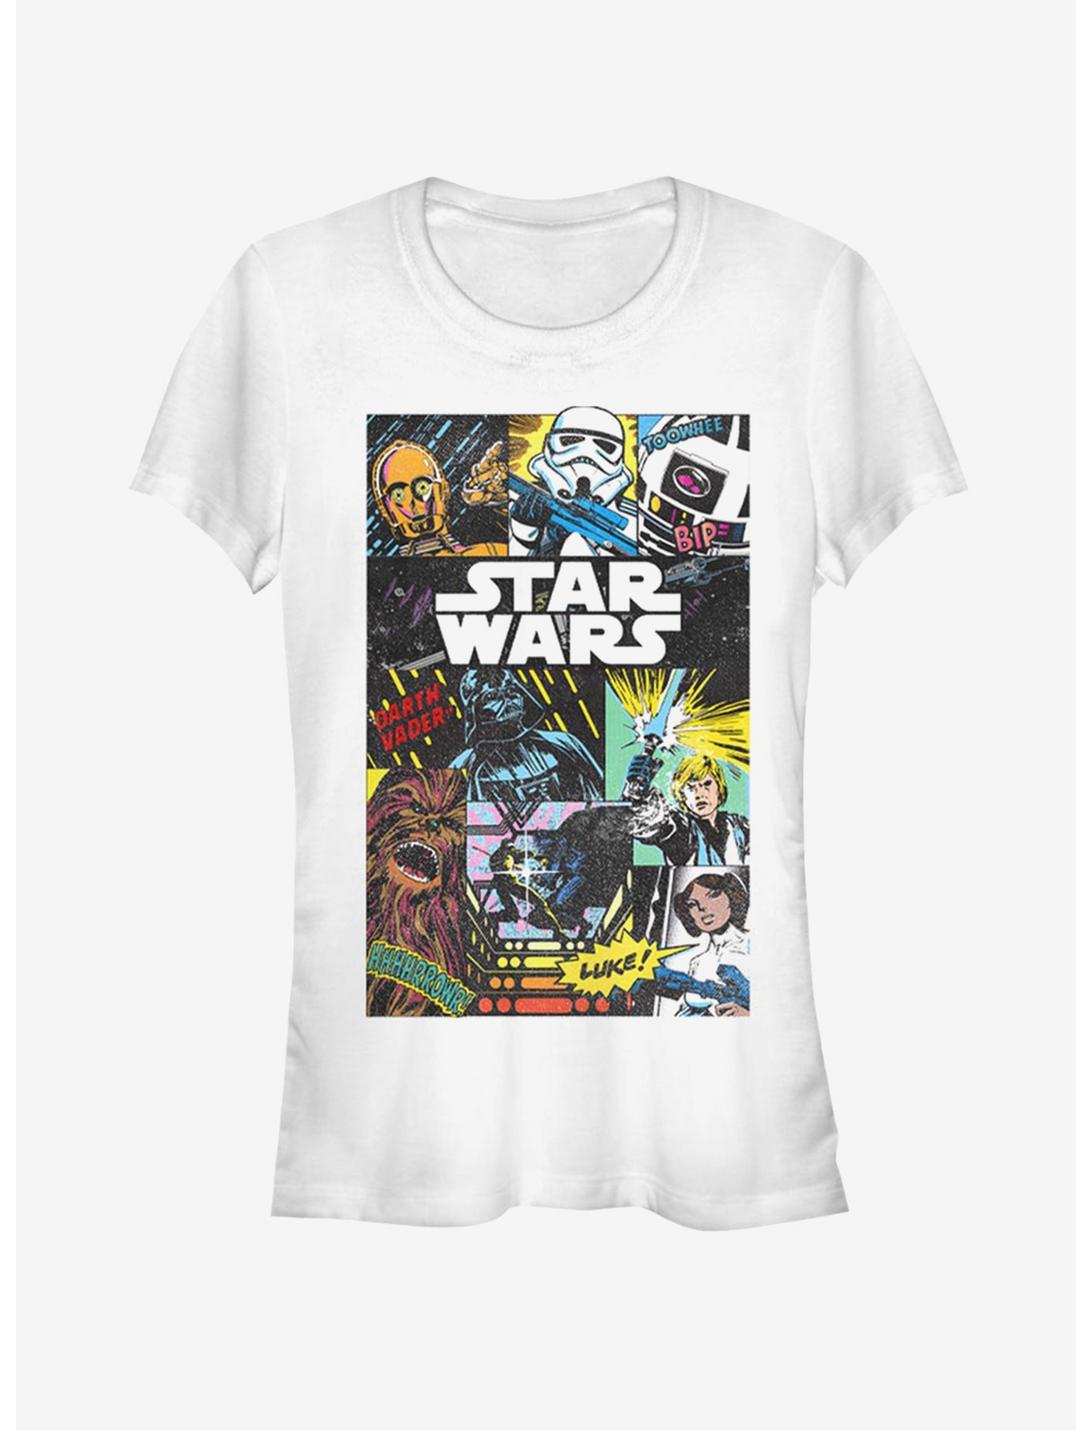 Star Wars Star Wars Comic Collage Girls T-Shirt, WHITE, hi-res